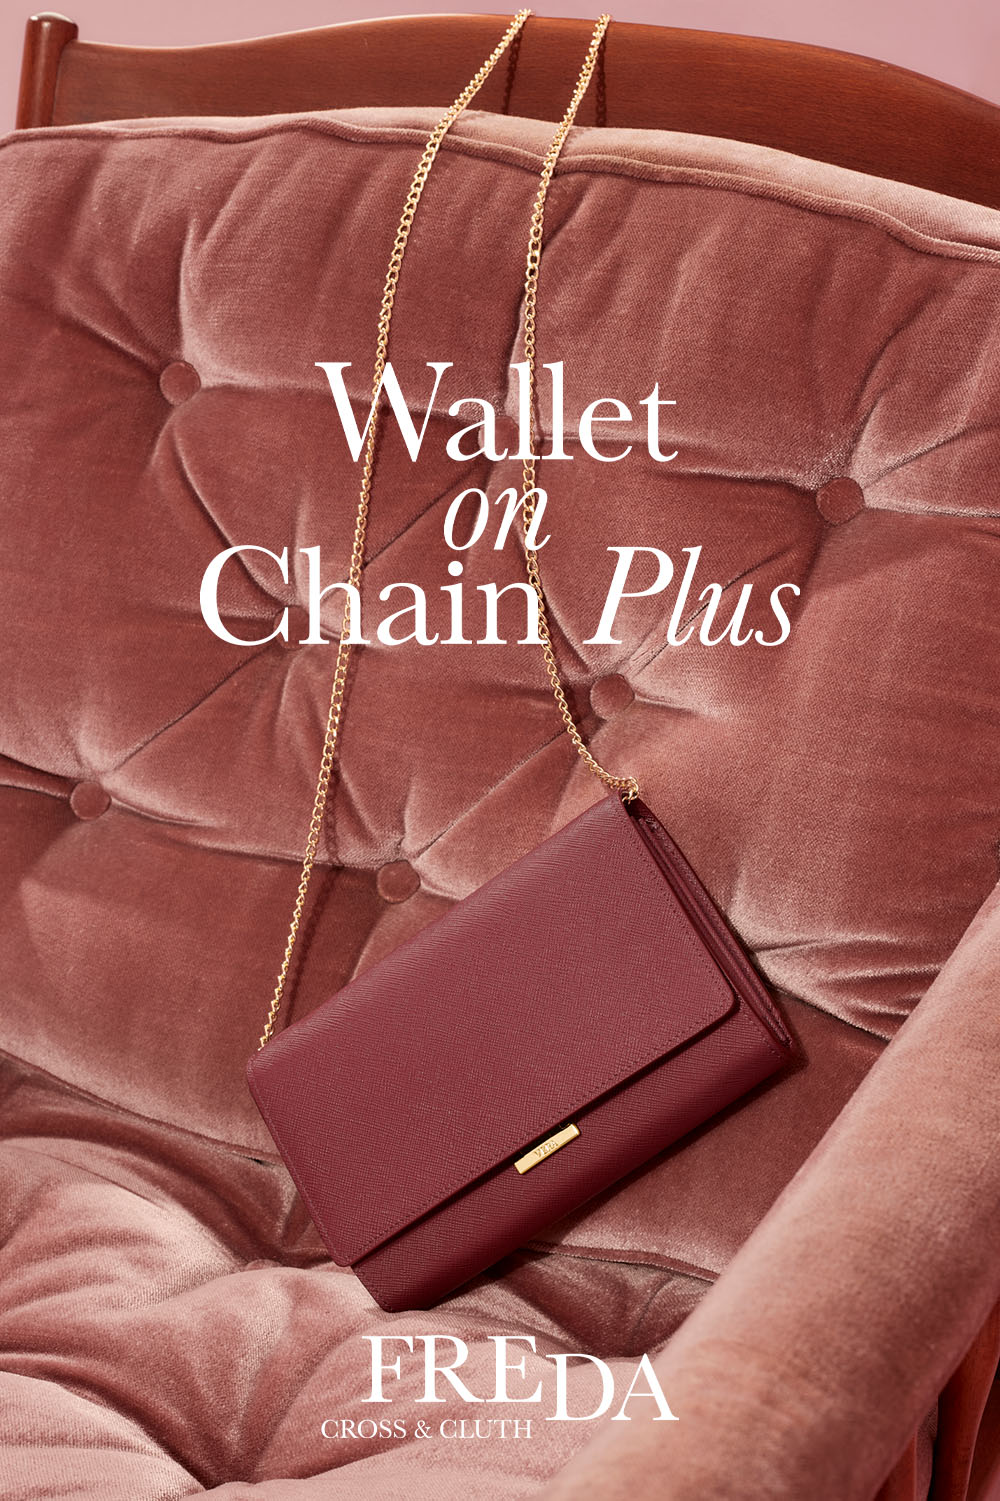 VERA Freda - Wallet on Chain Plus, กระเป๋าสตางค์ที่พลัสด้วยสายสะพายโซ่และสายหนัง